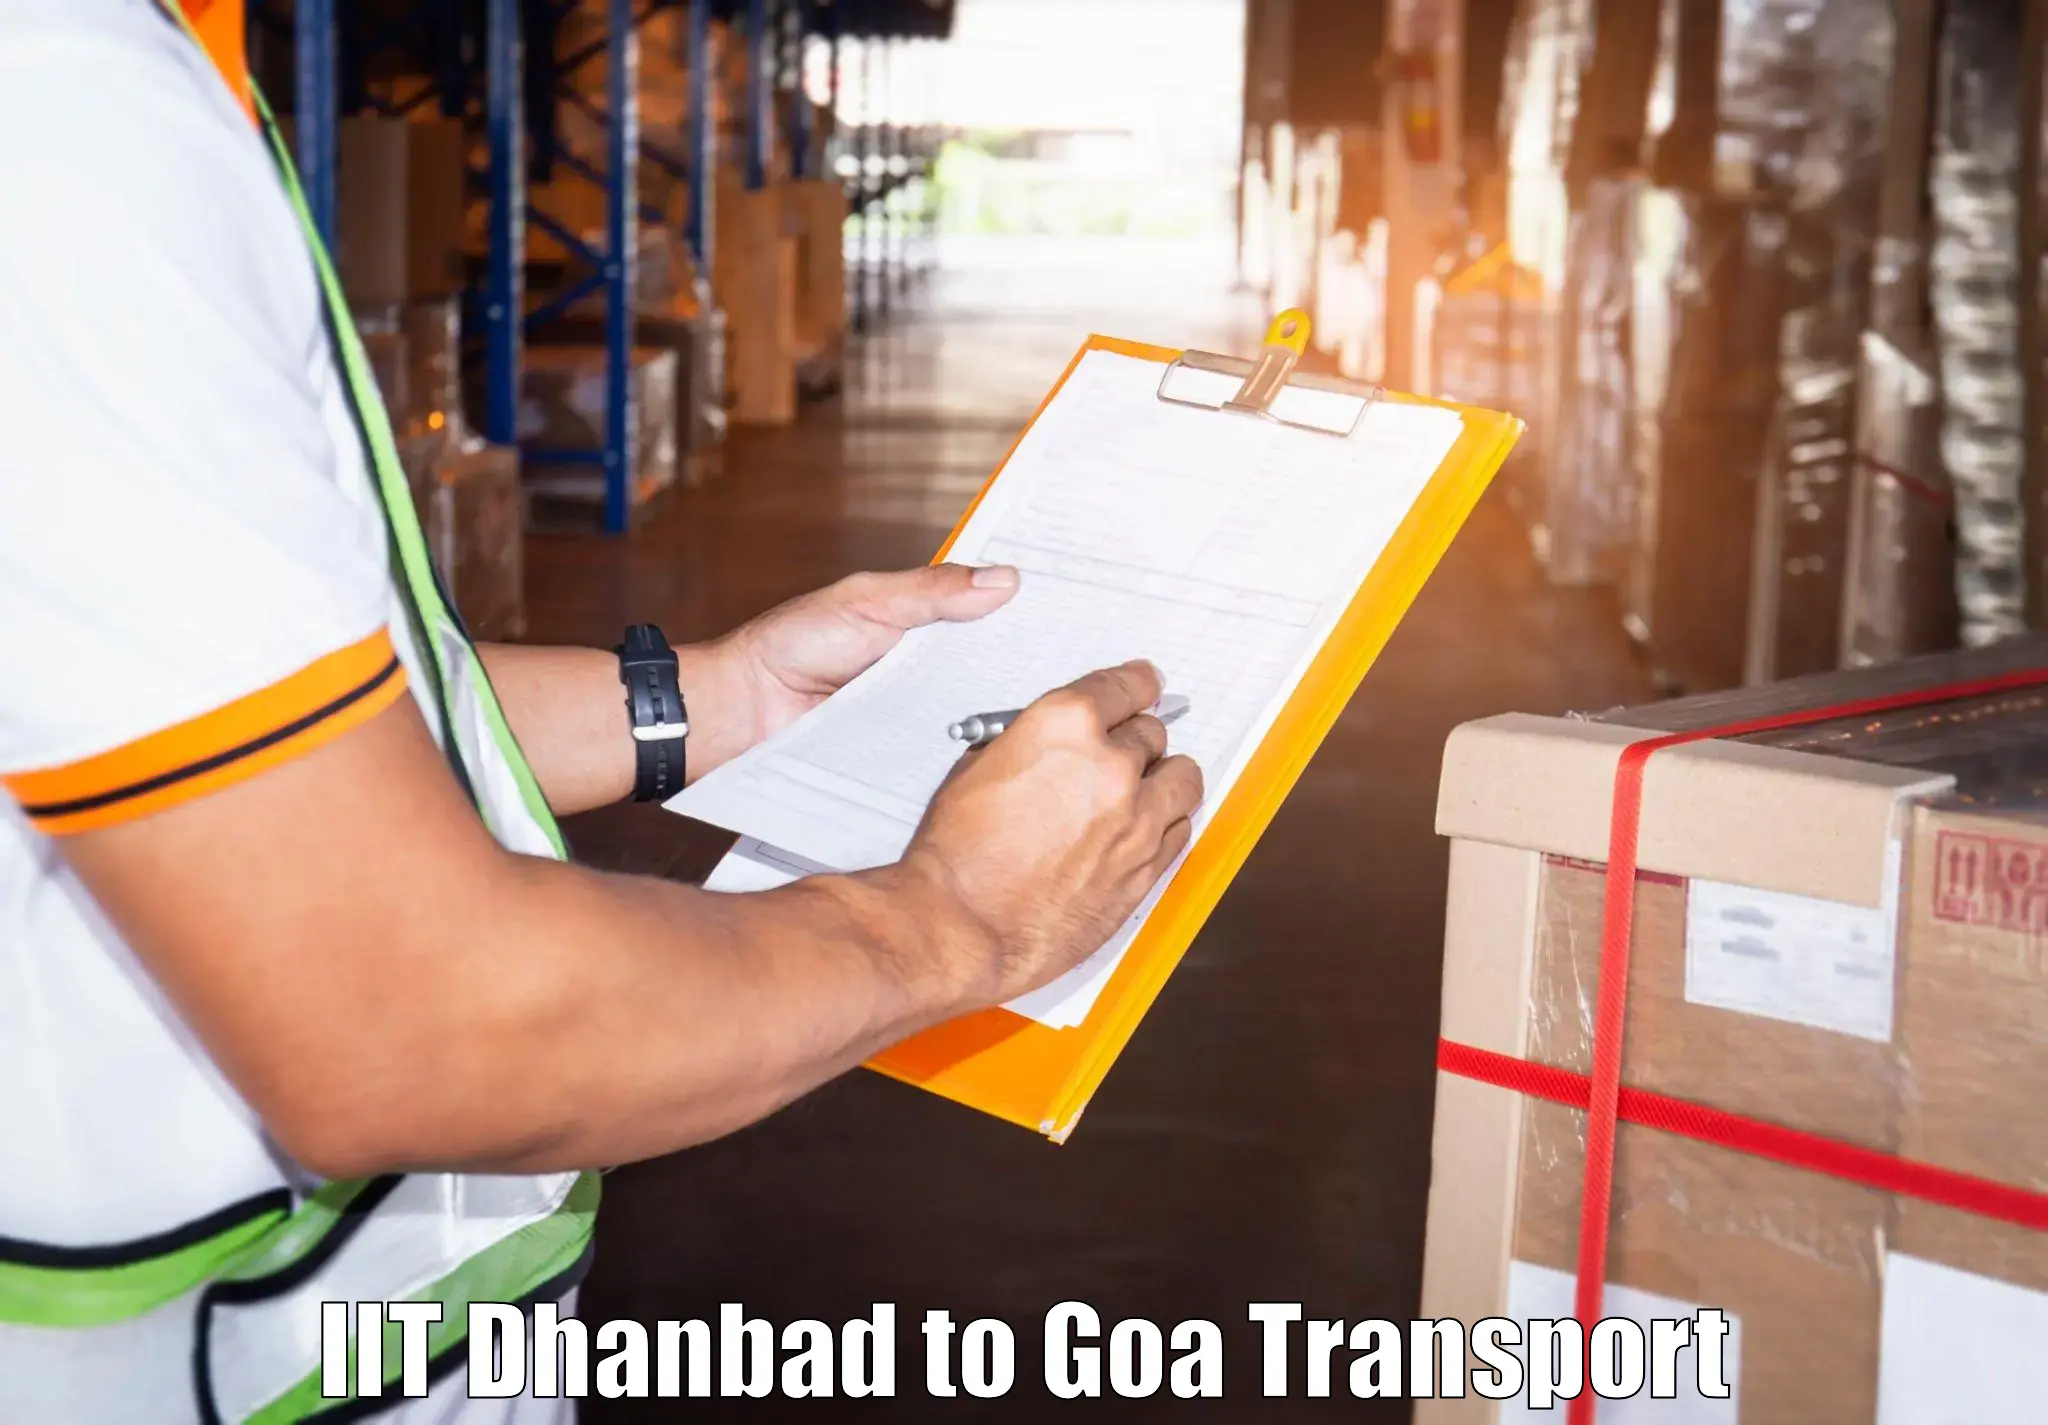 Door to door transport services IIT Dhanbad to Panaji